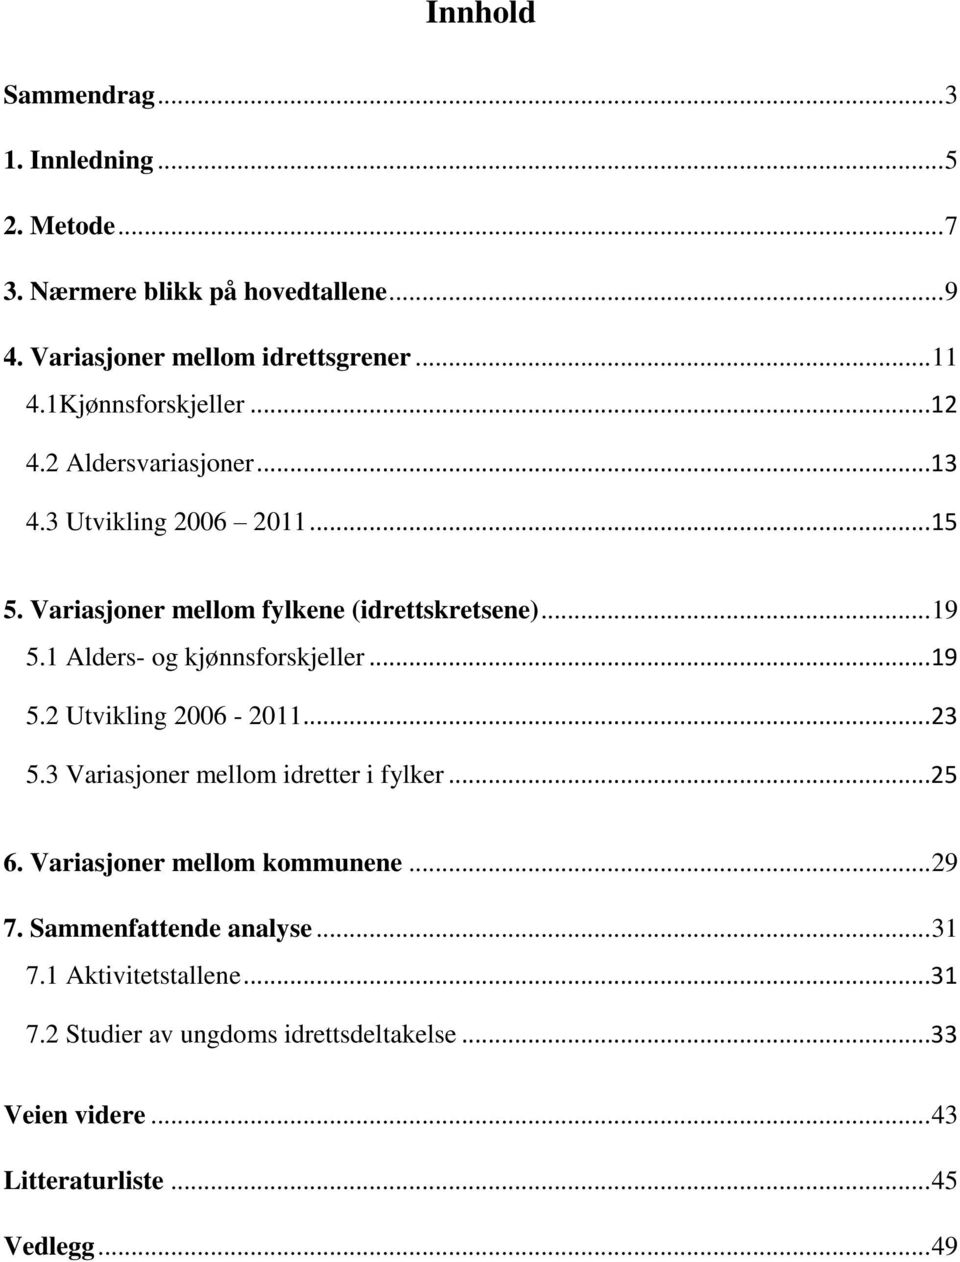 1 Alders- og kjønnsforskjeller...19 5.2 Utvikling 2006-2011...23 5.3 Variasjoner mellom idretter i fylker...25 6. Variasjoner mellom kommunene.